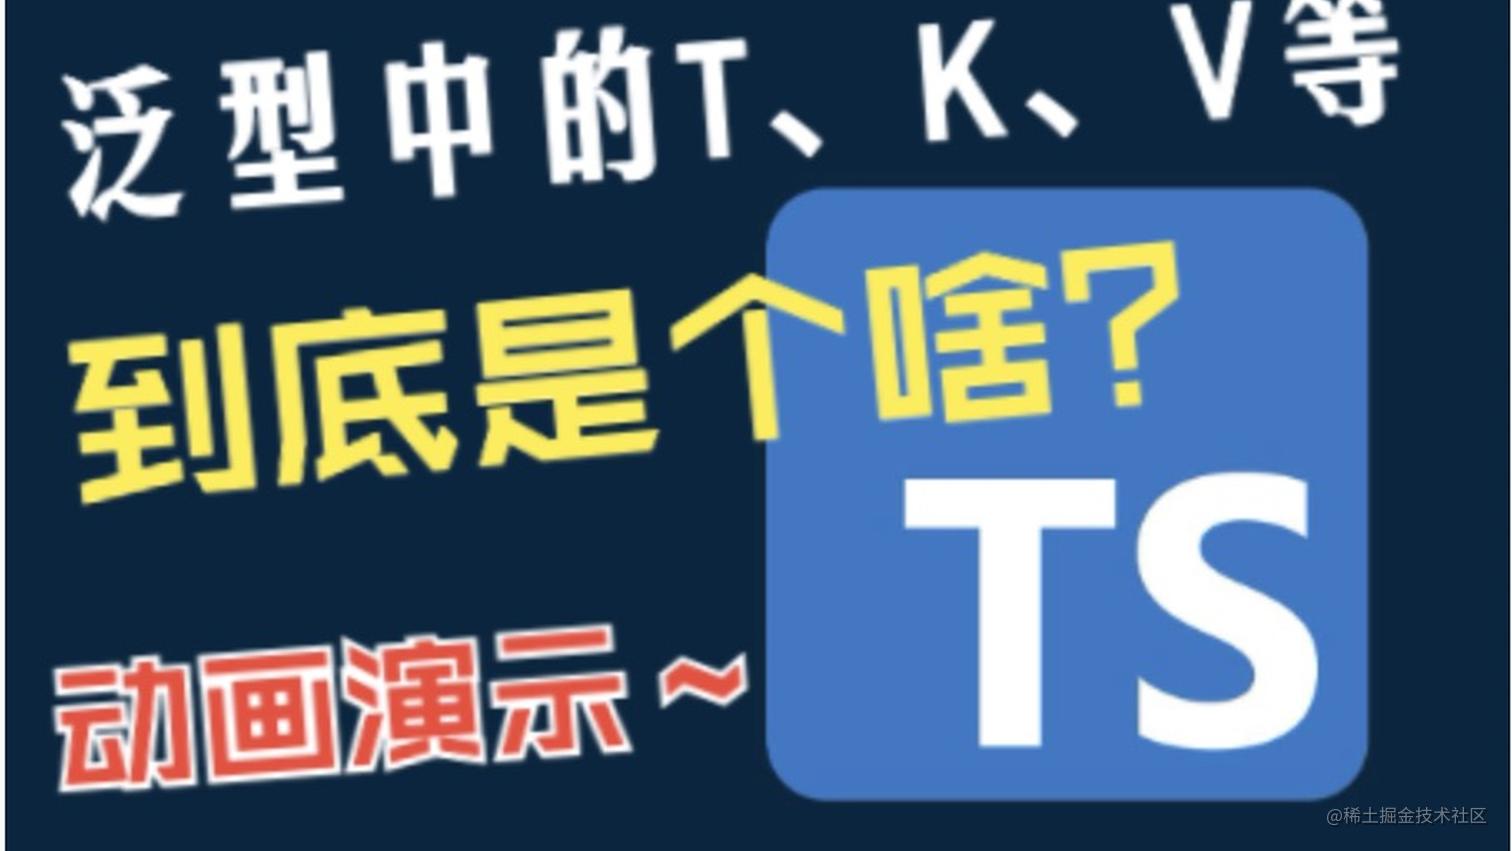 【动画演示】TypeScript 泛型中的 K、T、V 等到底是个啥？